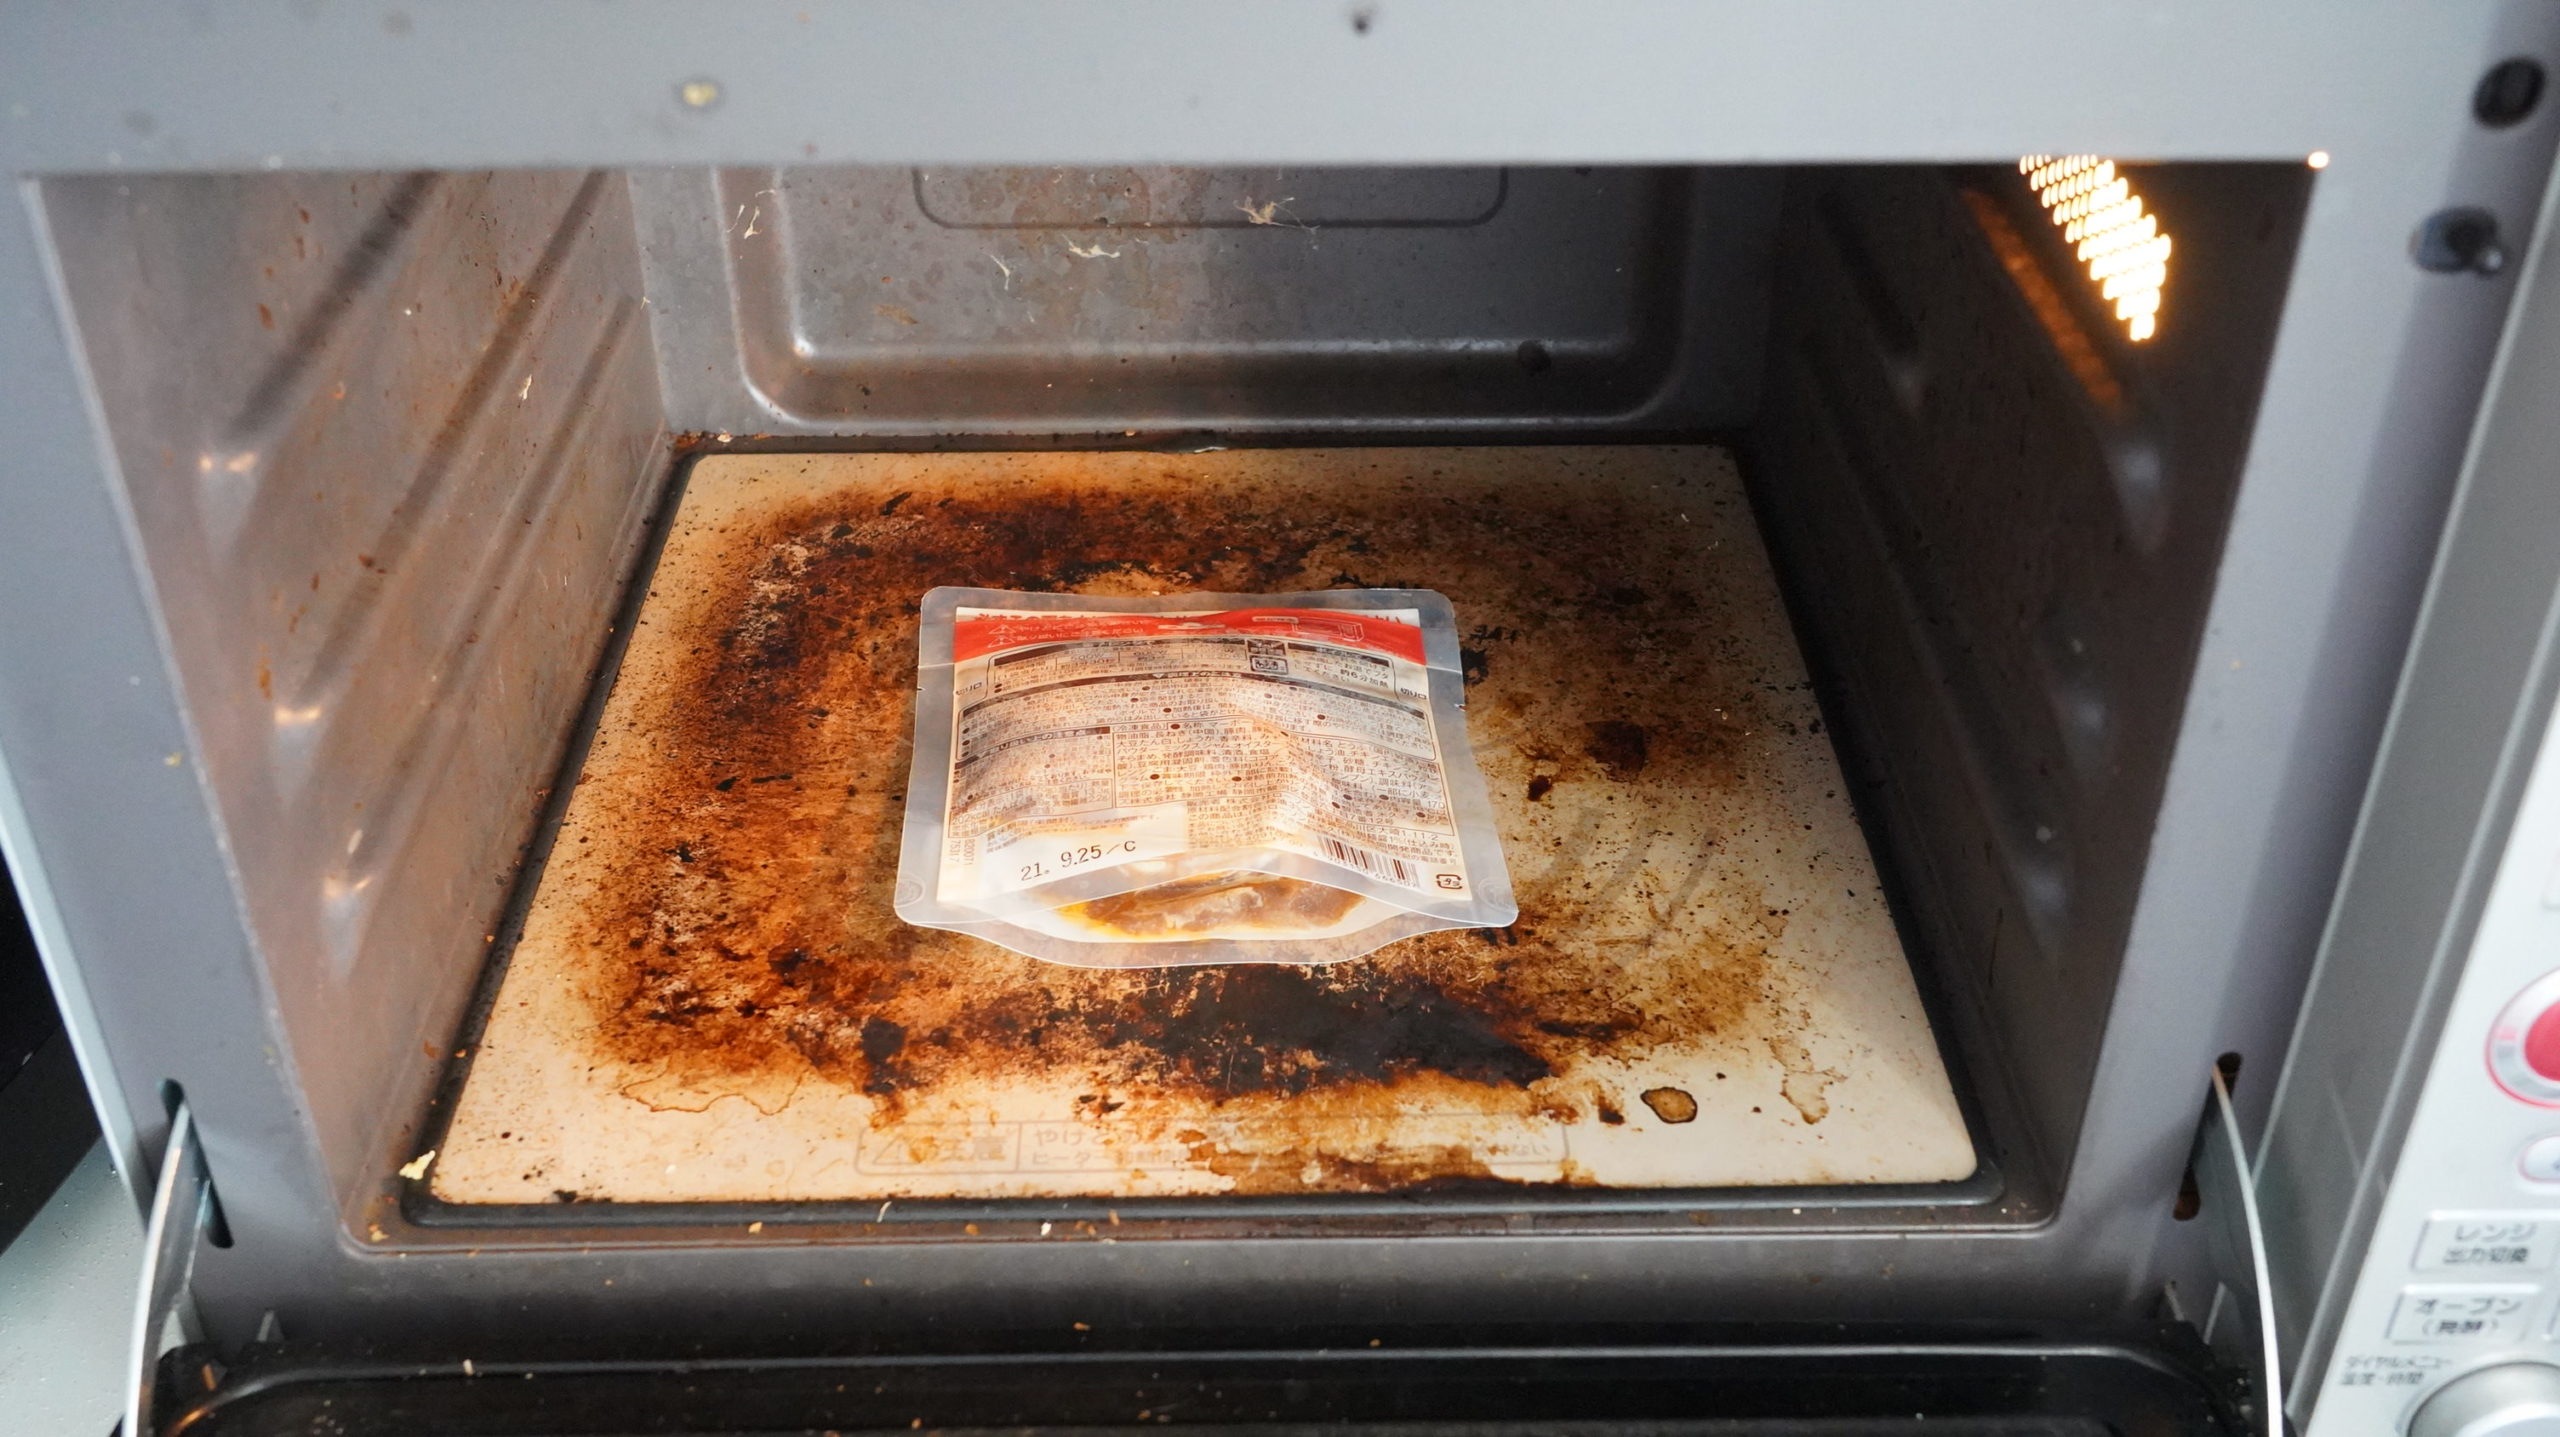 ローソンの冷凍食品「四川風麻婆豆腐」を電子レンジで加熱している写真